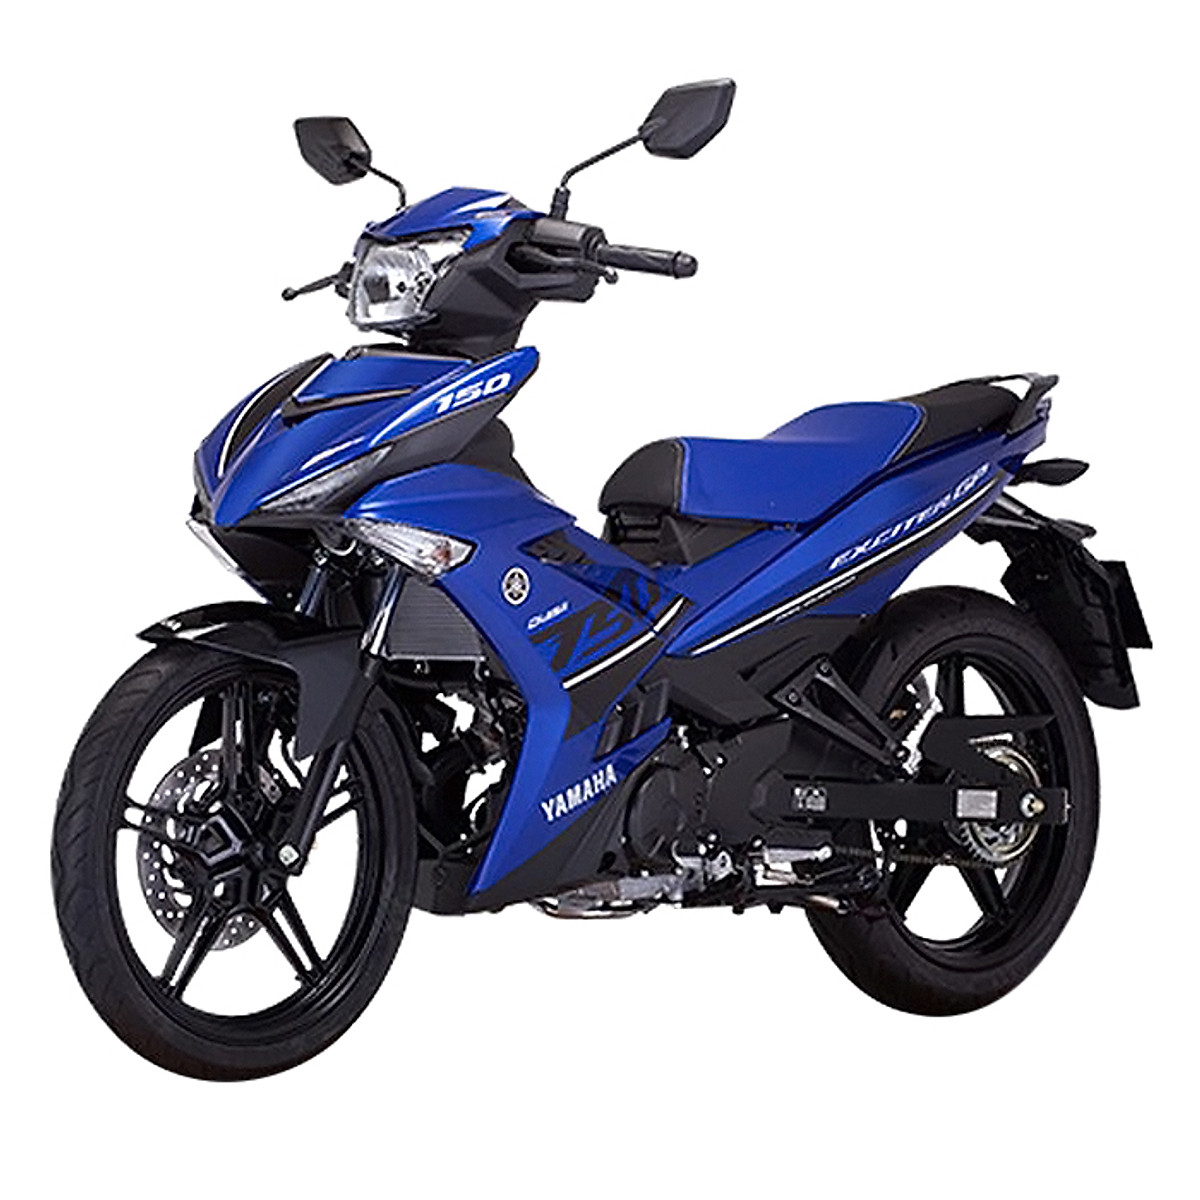 Cần bán YAMAHA Exciter 150 GP 2017 màu xanh biển ở Hà Nội giá 268tr MSP  1728157